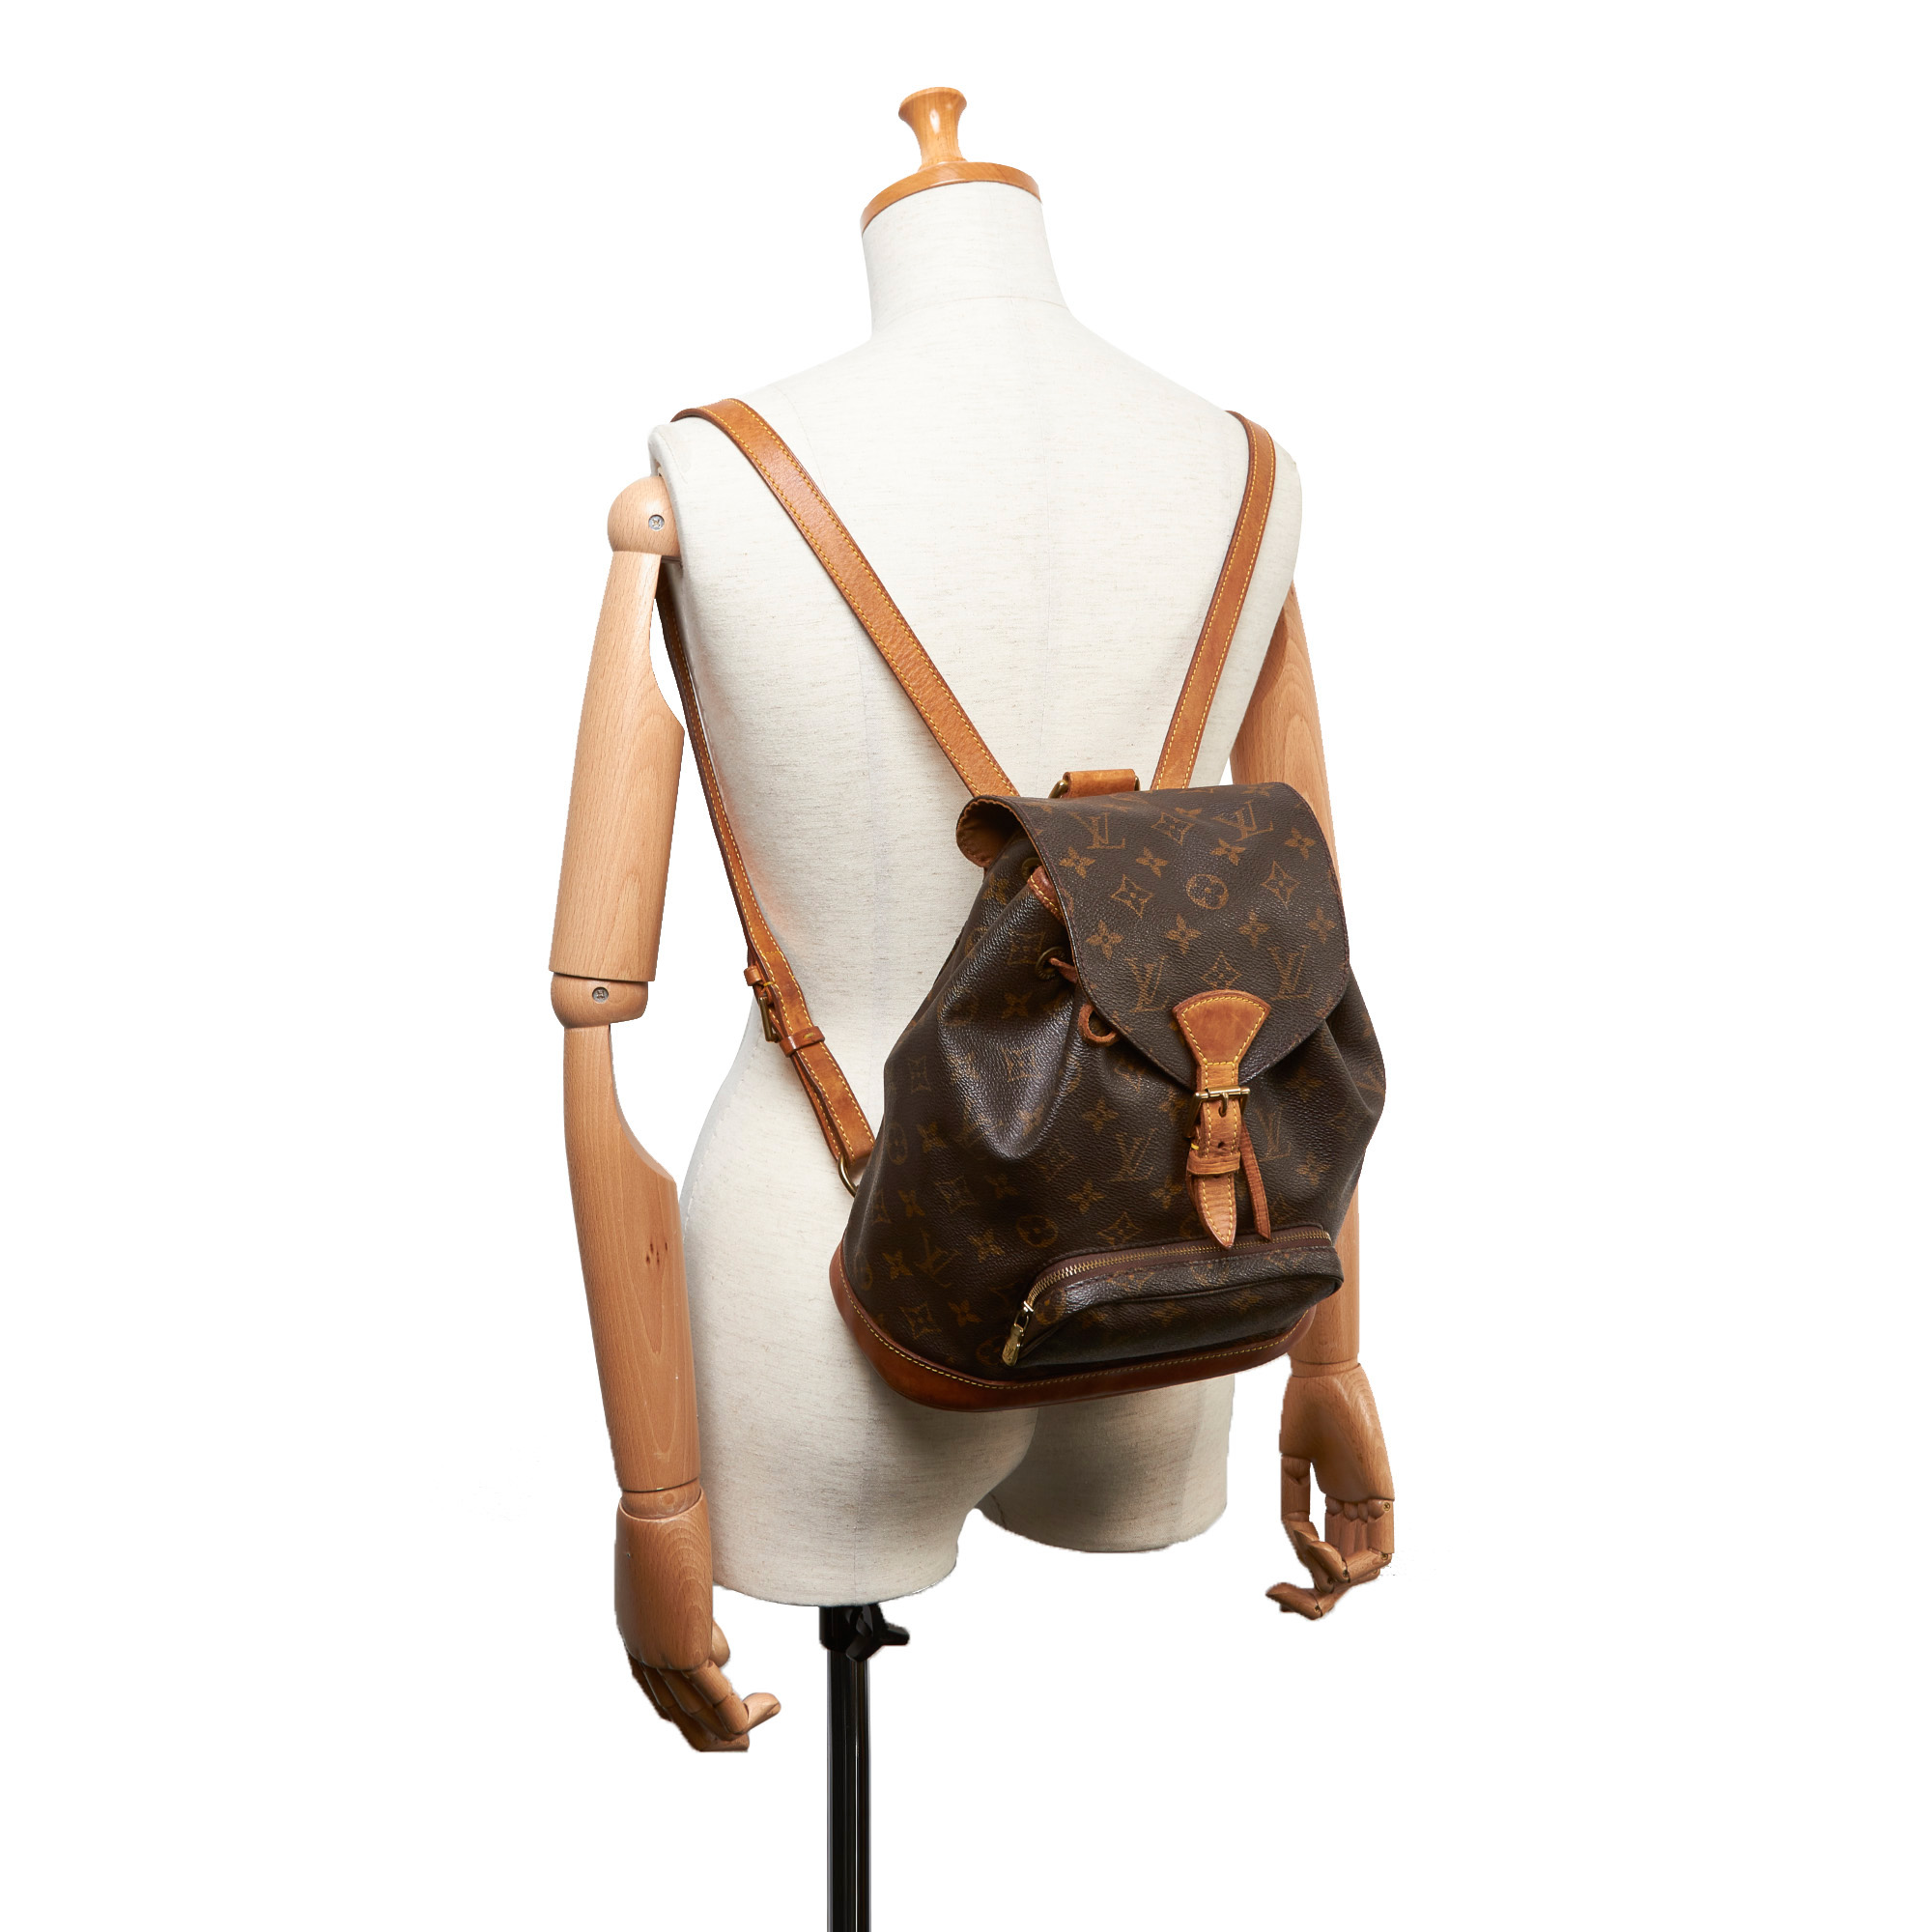 Louis Vuitton, Bags, Louis Vuitton Monogram Montsouris Pm Backpack  Missing Cinch Cord